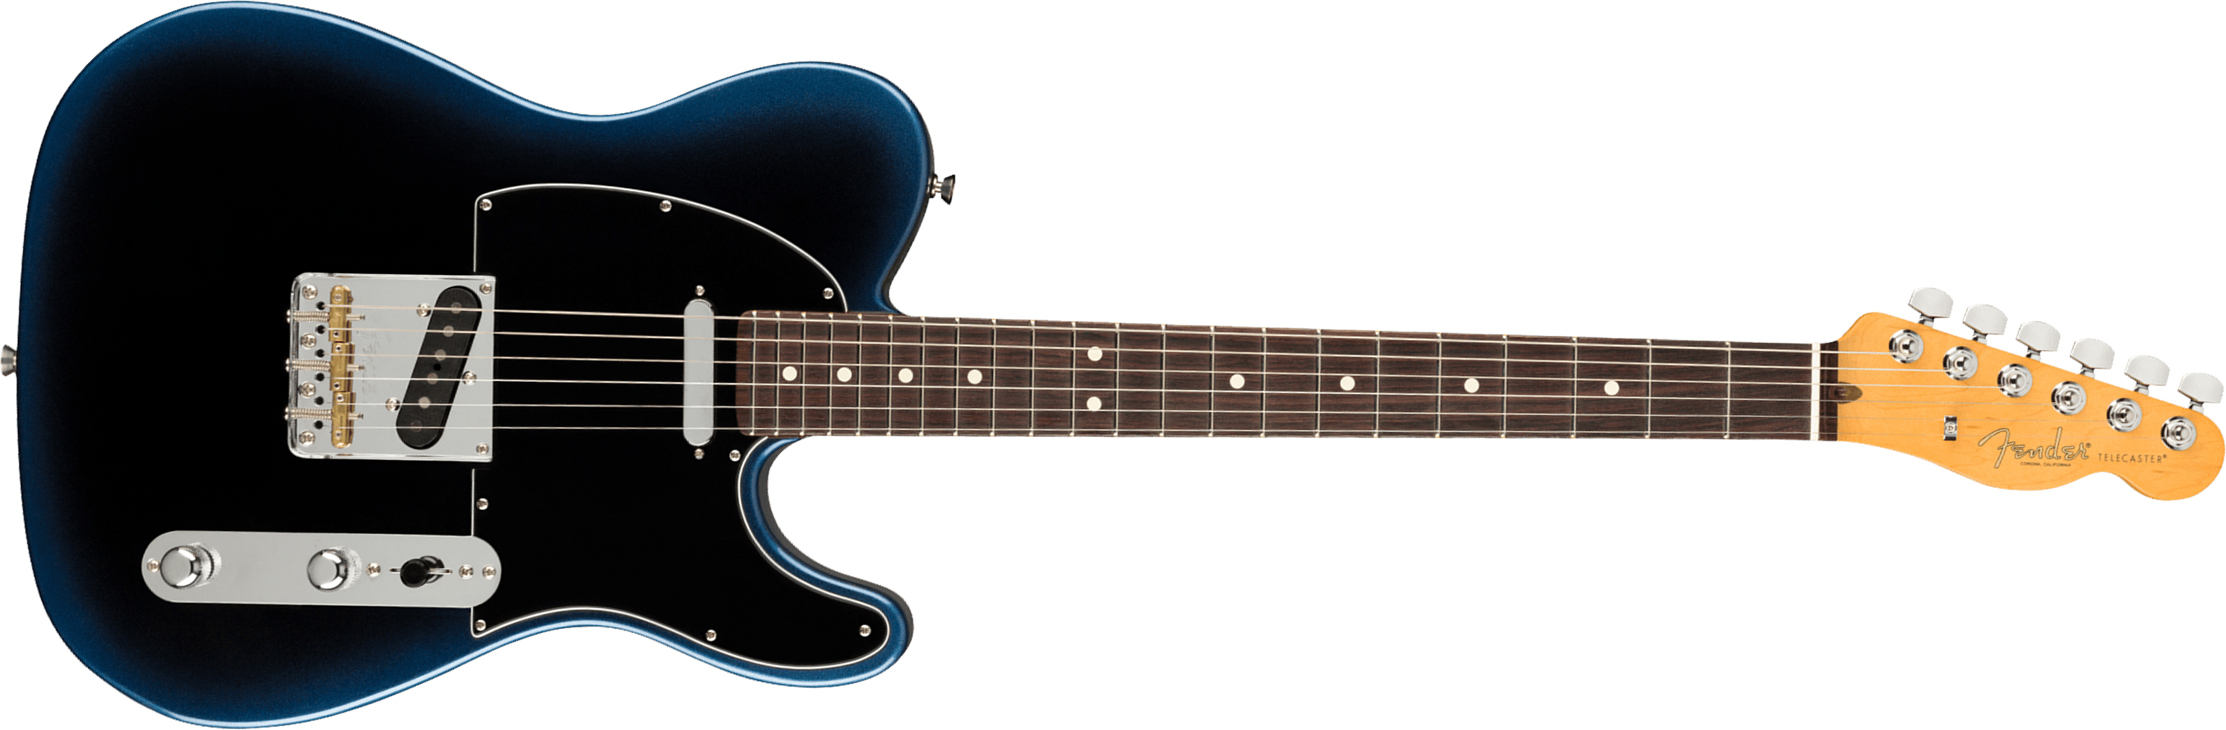 Fender Tele American Professional Ii Usa Rw - Dark Night - E-Gitarre in Teleform - Main picture